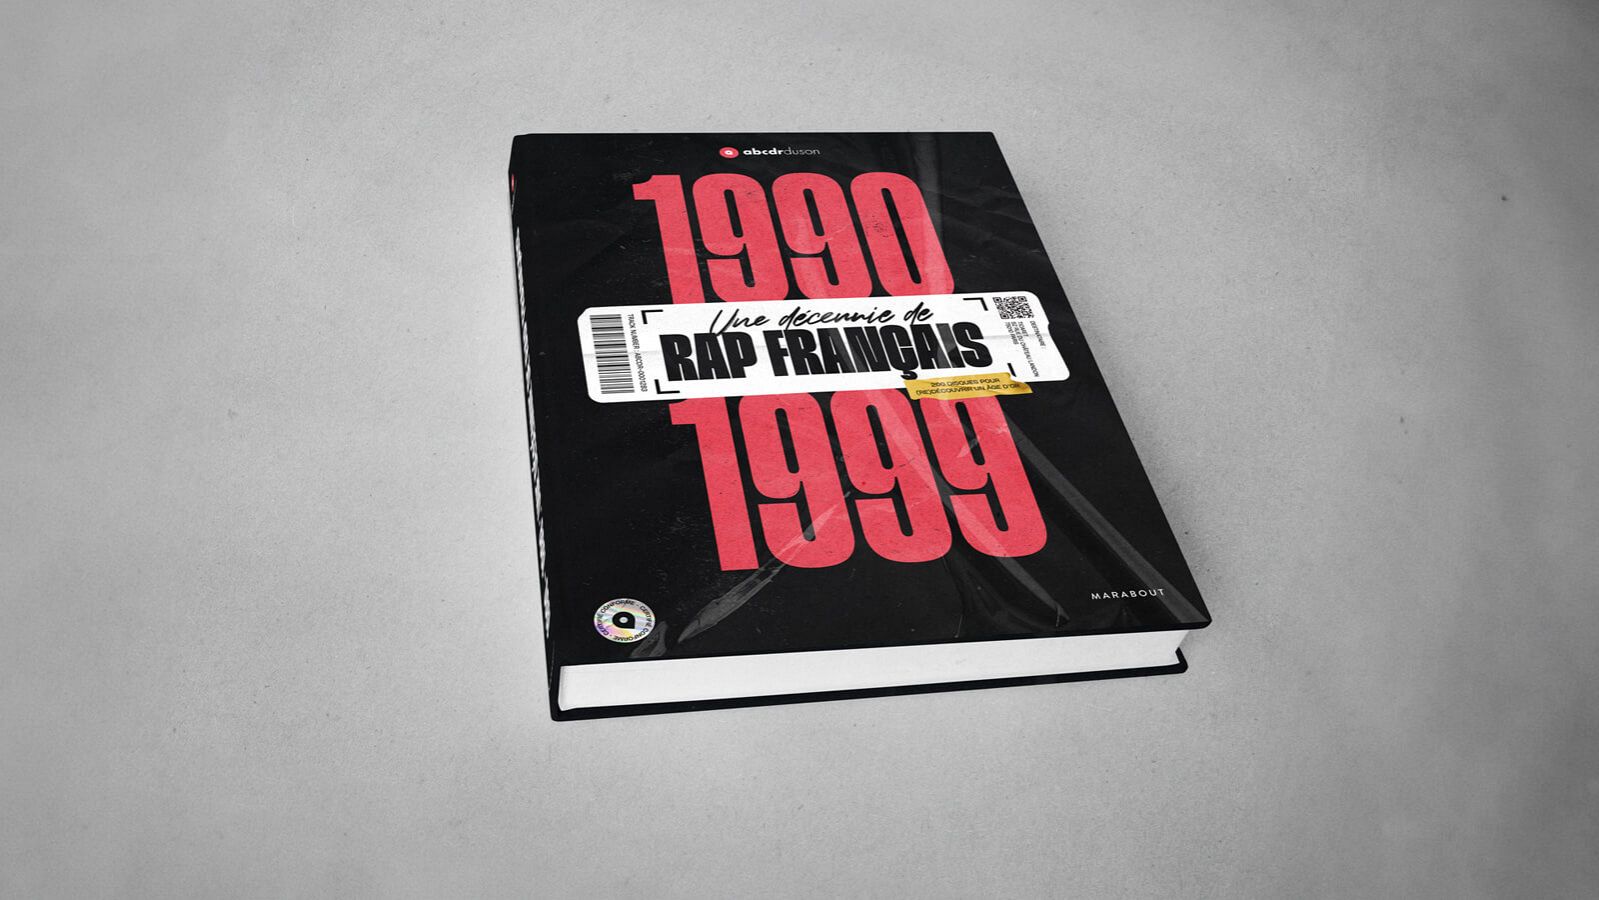 Abcdr du Son on X: Notre livre 1990-1999, Une décennie de rap français  sort mercredi. Dans le chapitre Ressens le son l'Abcdr met les  producteurs à l'honneur, en s'intéressant à la façon